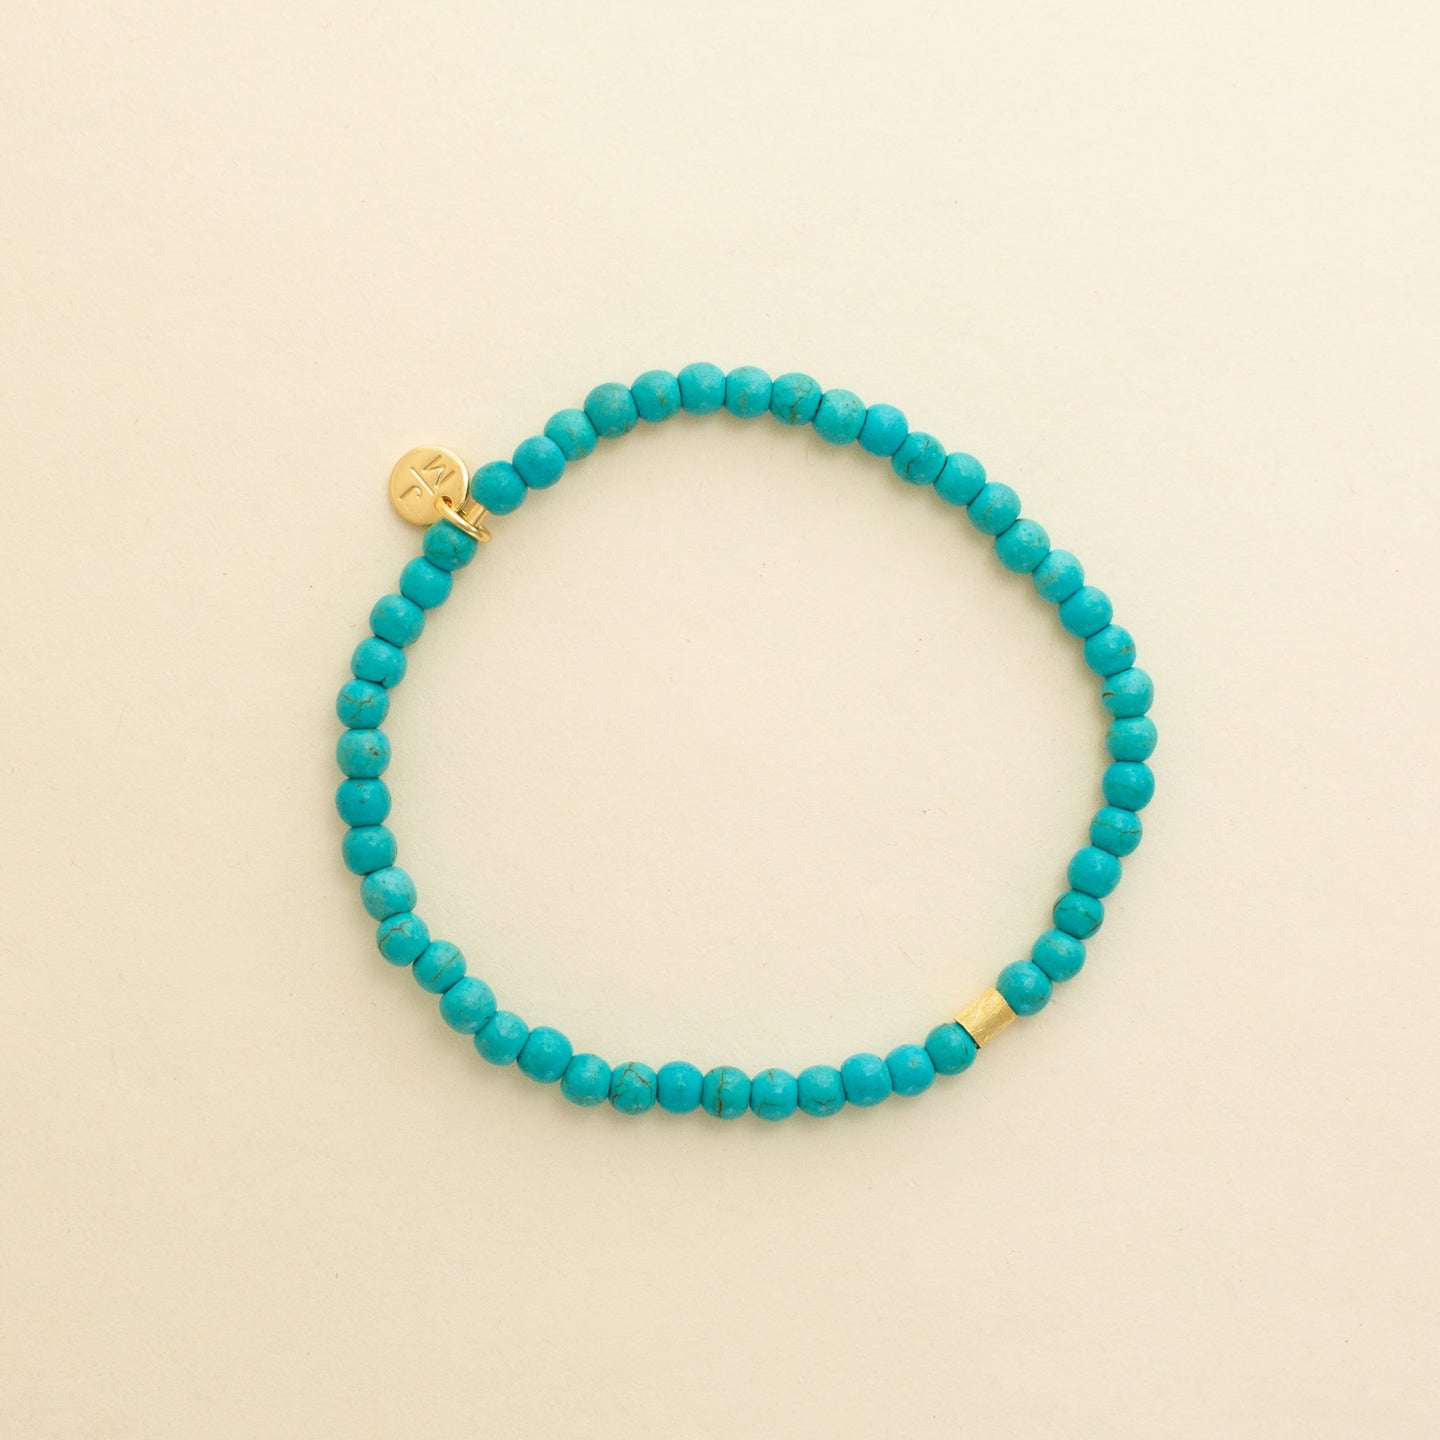 4mm Turquoise Stone Bracelet